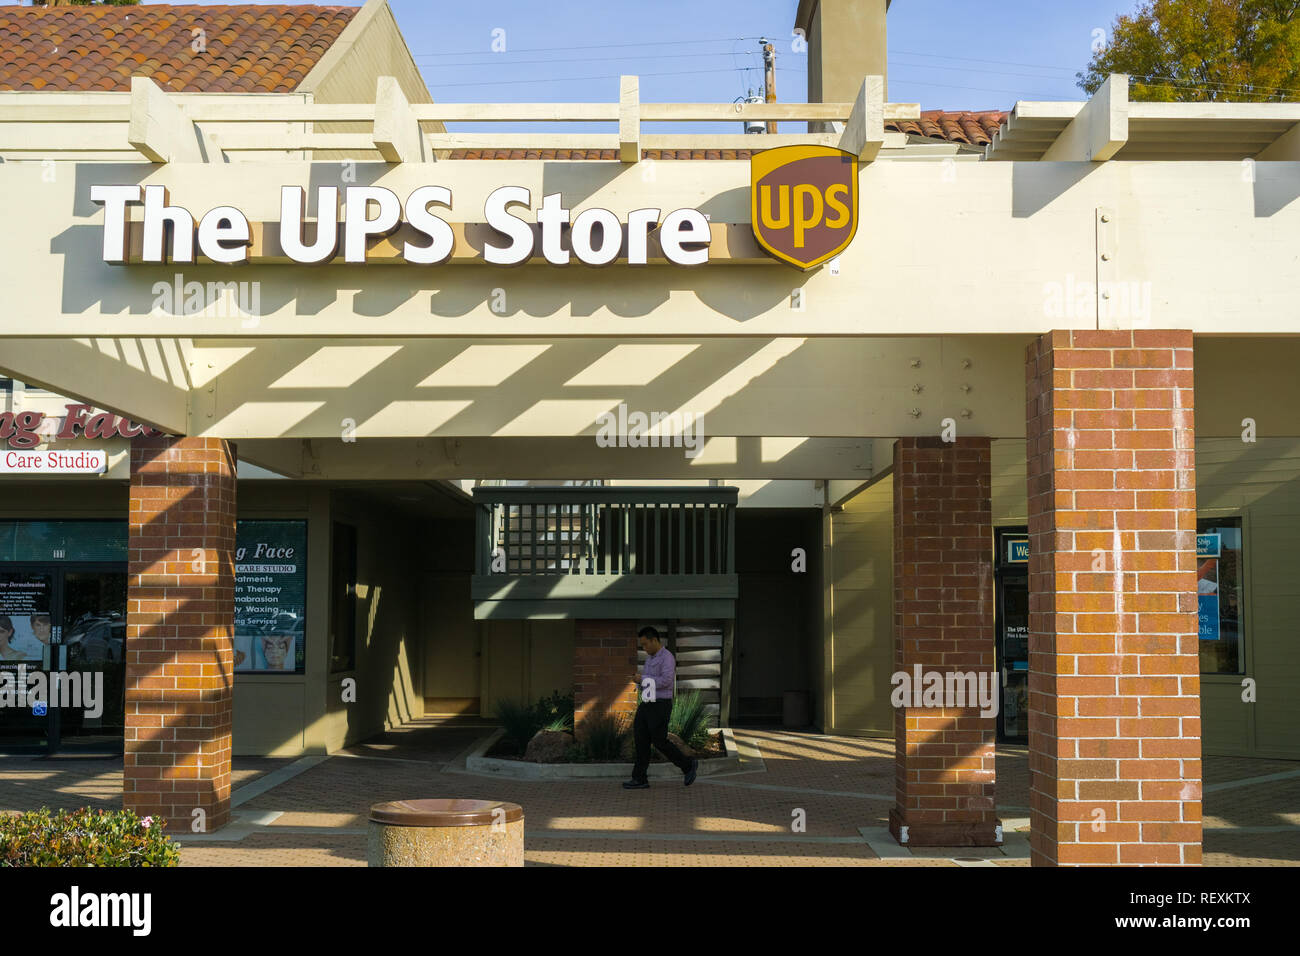 December 22, 2017 Sunnyvale / CA / USA - The UPS store located on El Camino Real, Santa Clara county, San Francisco bay area Stock Photo